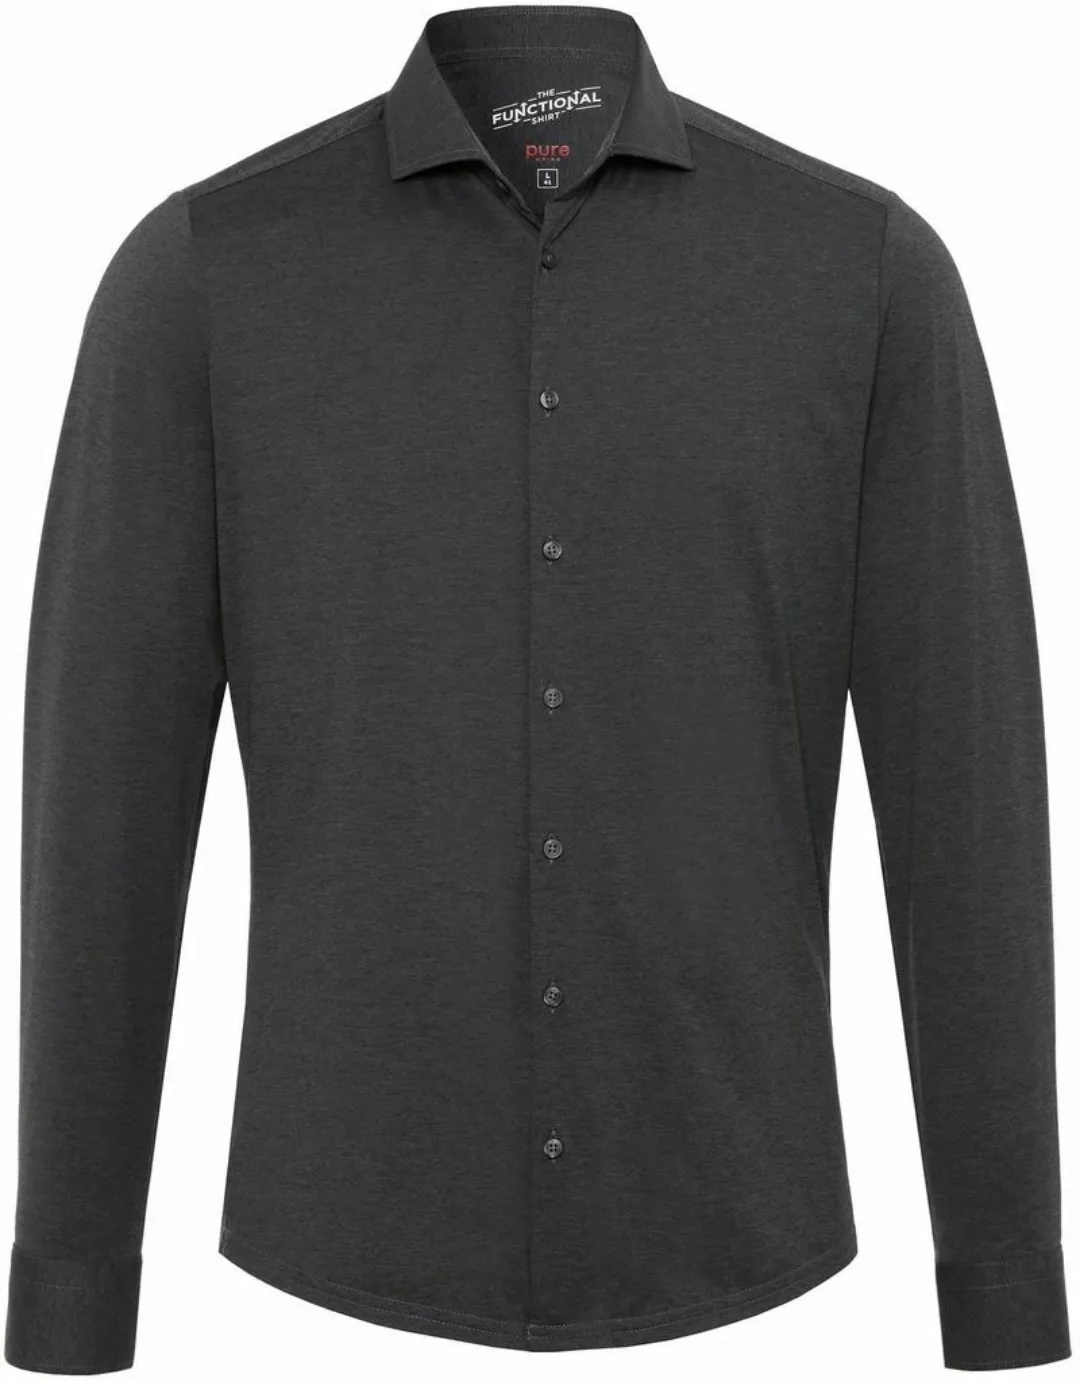 Pure H.Tico The Functional Dunkel Grau Shirt - Größe 44 günstig online kaufen